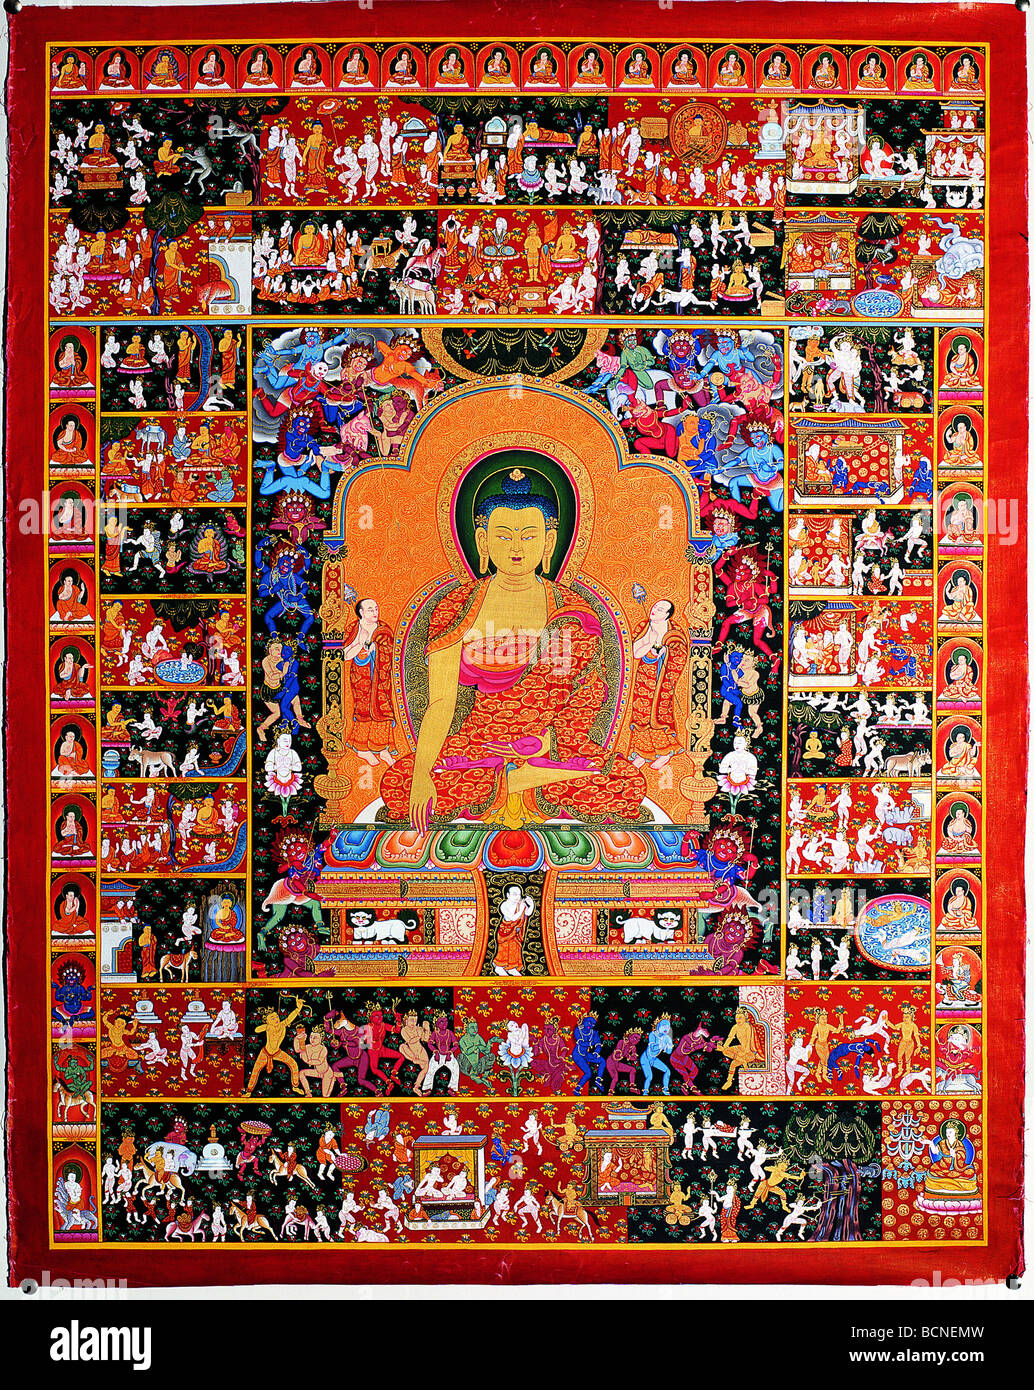 Tangka representando la historia de la vida de Buda, el Tibet, China Foto de stock